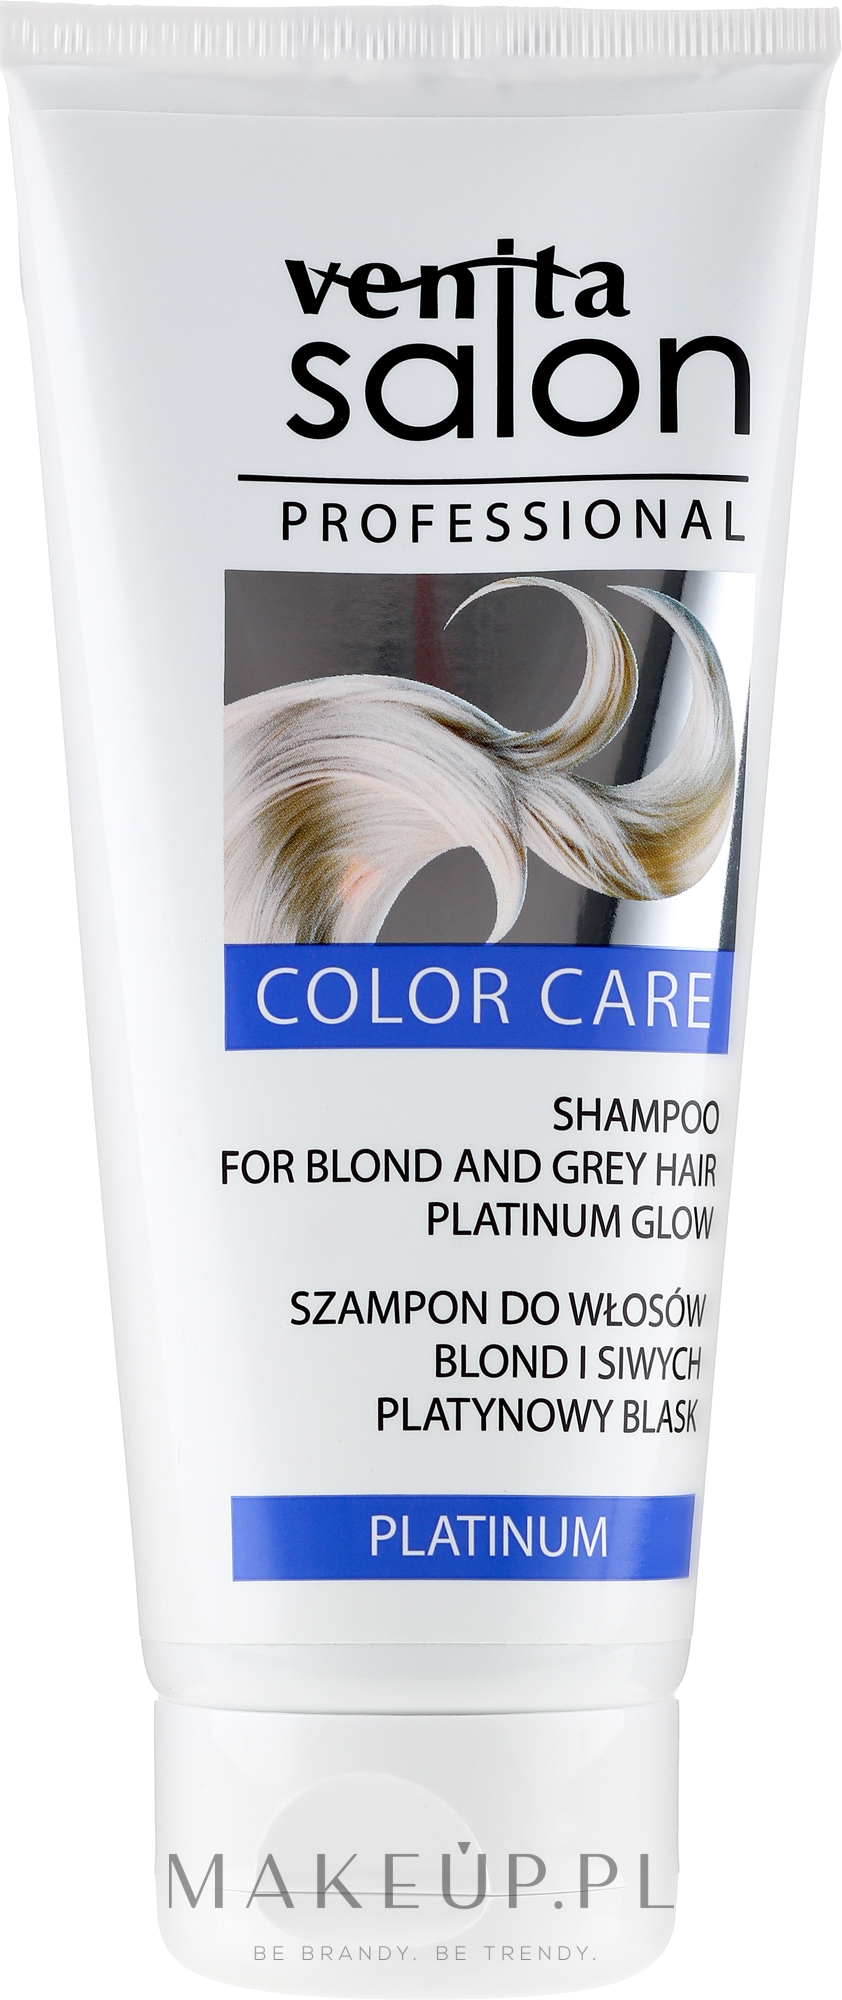 venita salon szampon do wlosow blond i siwych